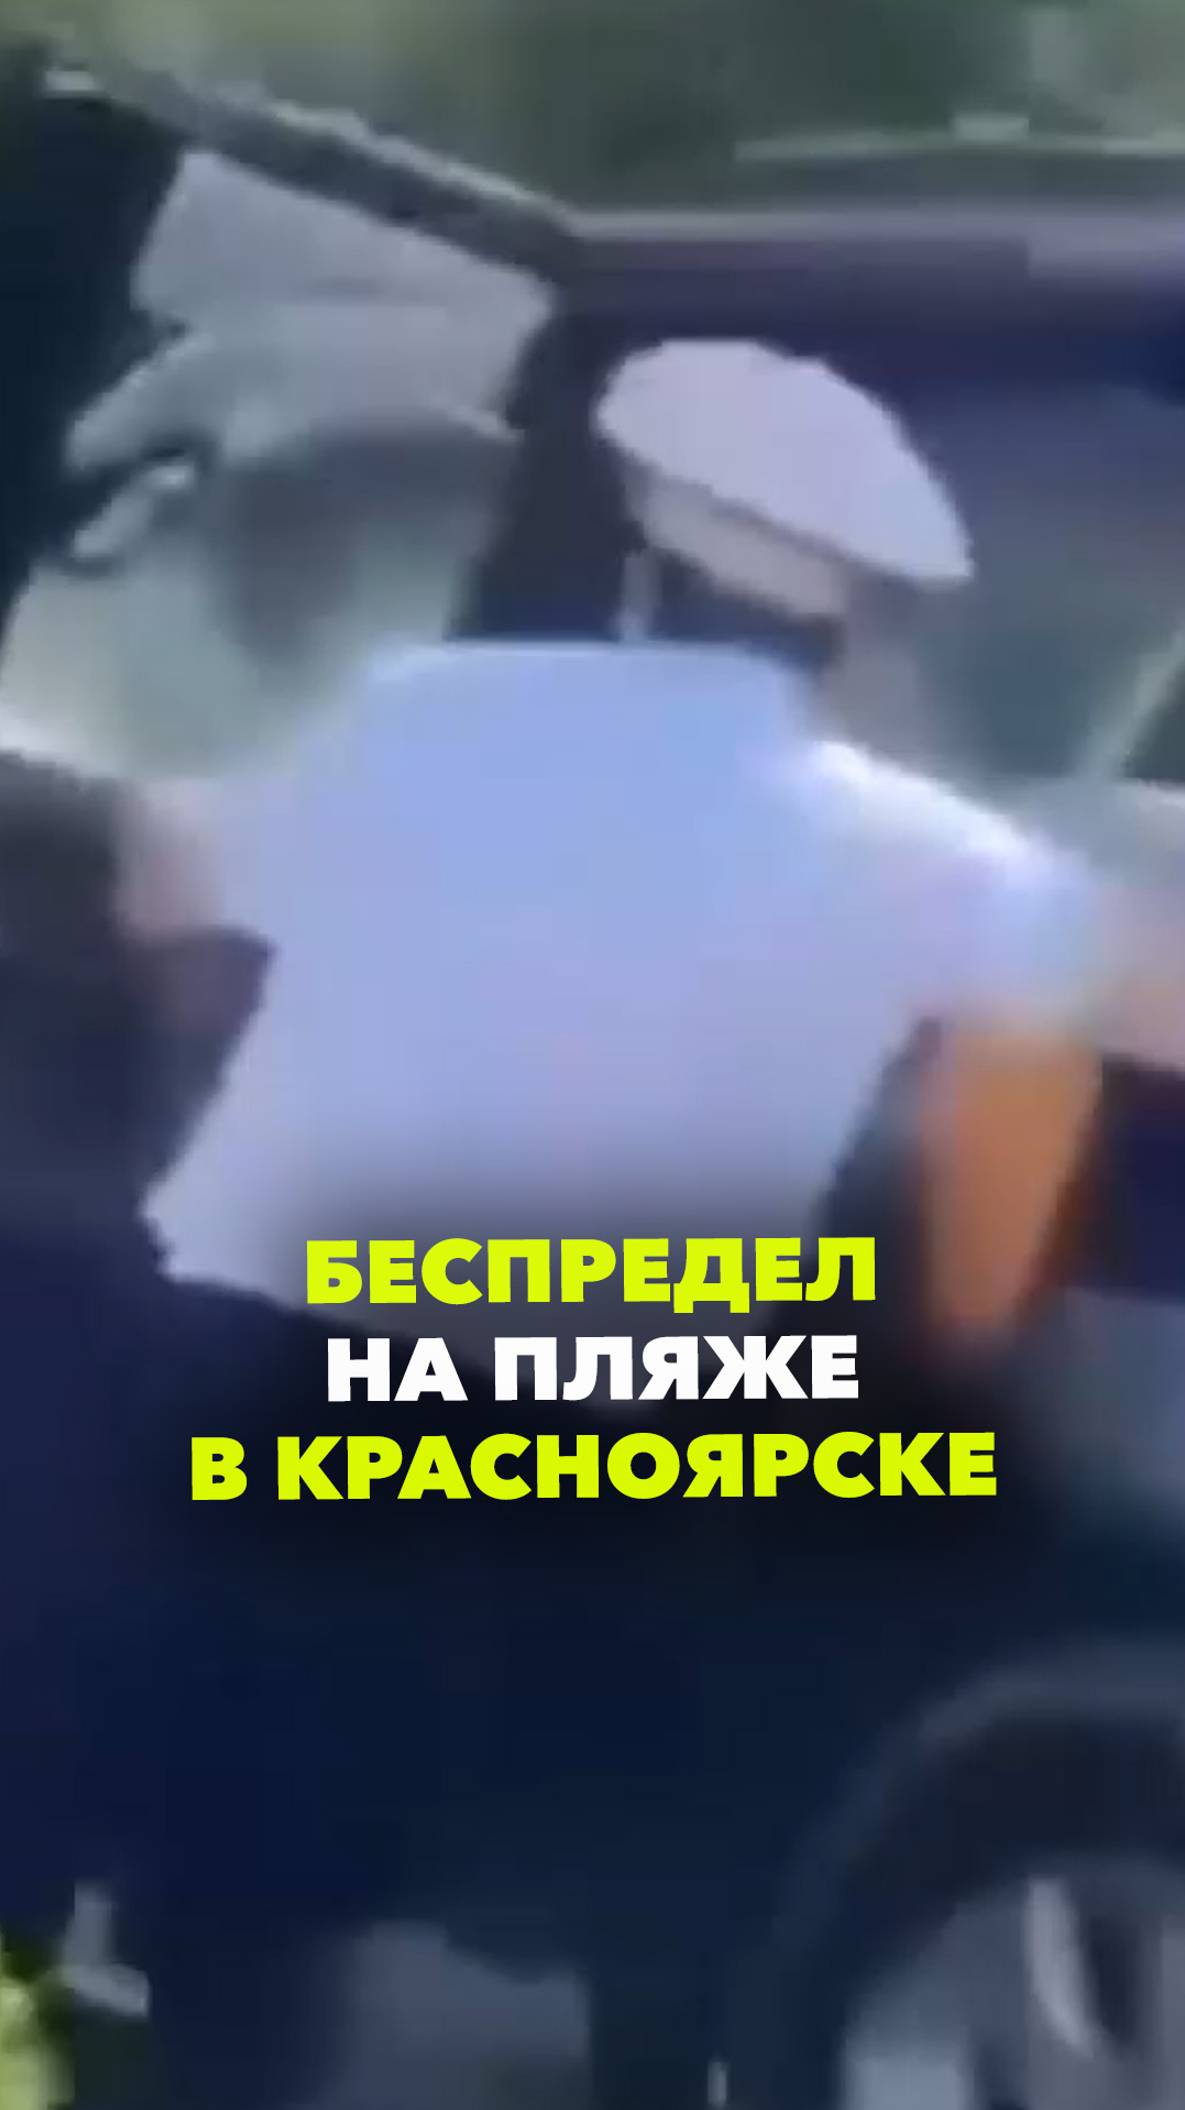 «Стой, стрелять буду!»: пьяный лихач беспределил на пляже в Красноярске